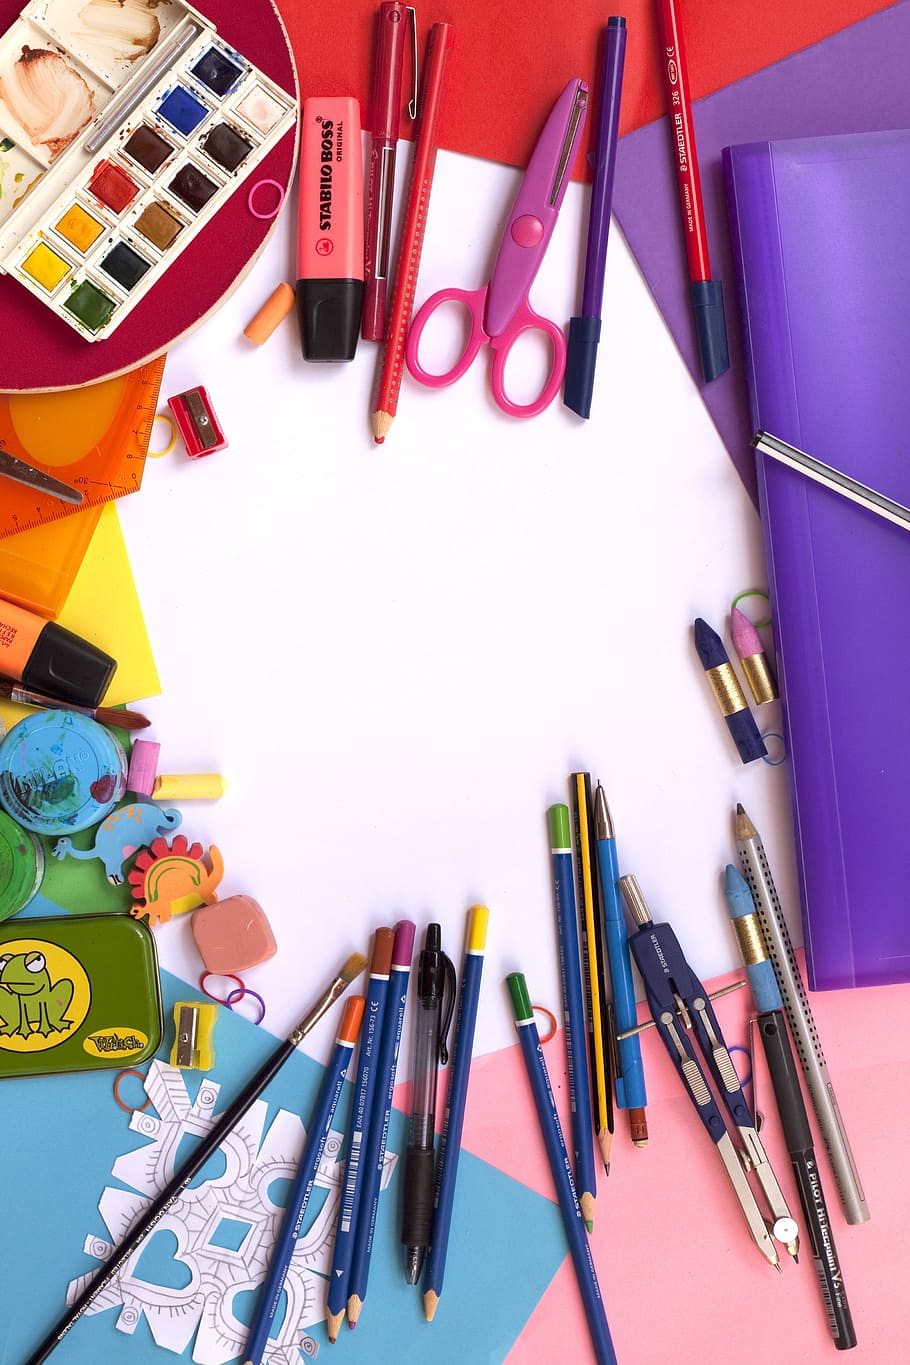 pensil warna, gunting, meja, lukisan, sekolah, warna, perlengkapan sekolah, plastik, multi-warna, kelompok besar benda